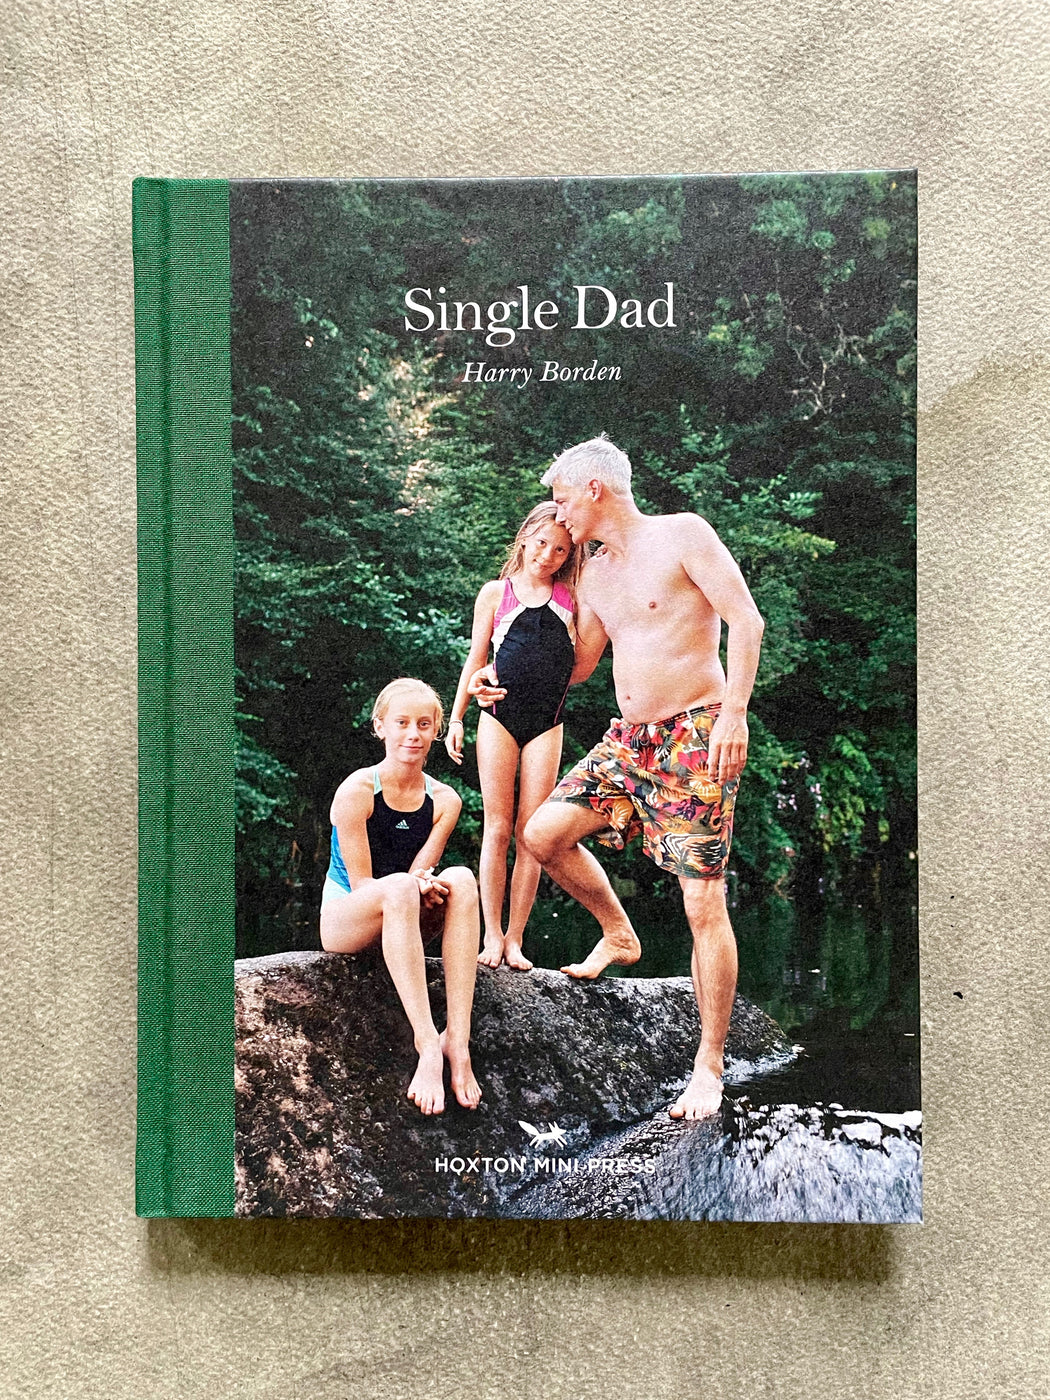 "Single Dad" by Harry Borden